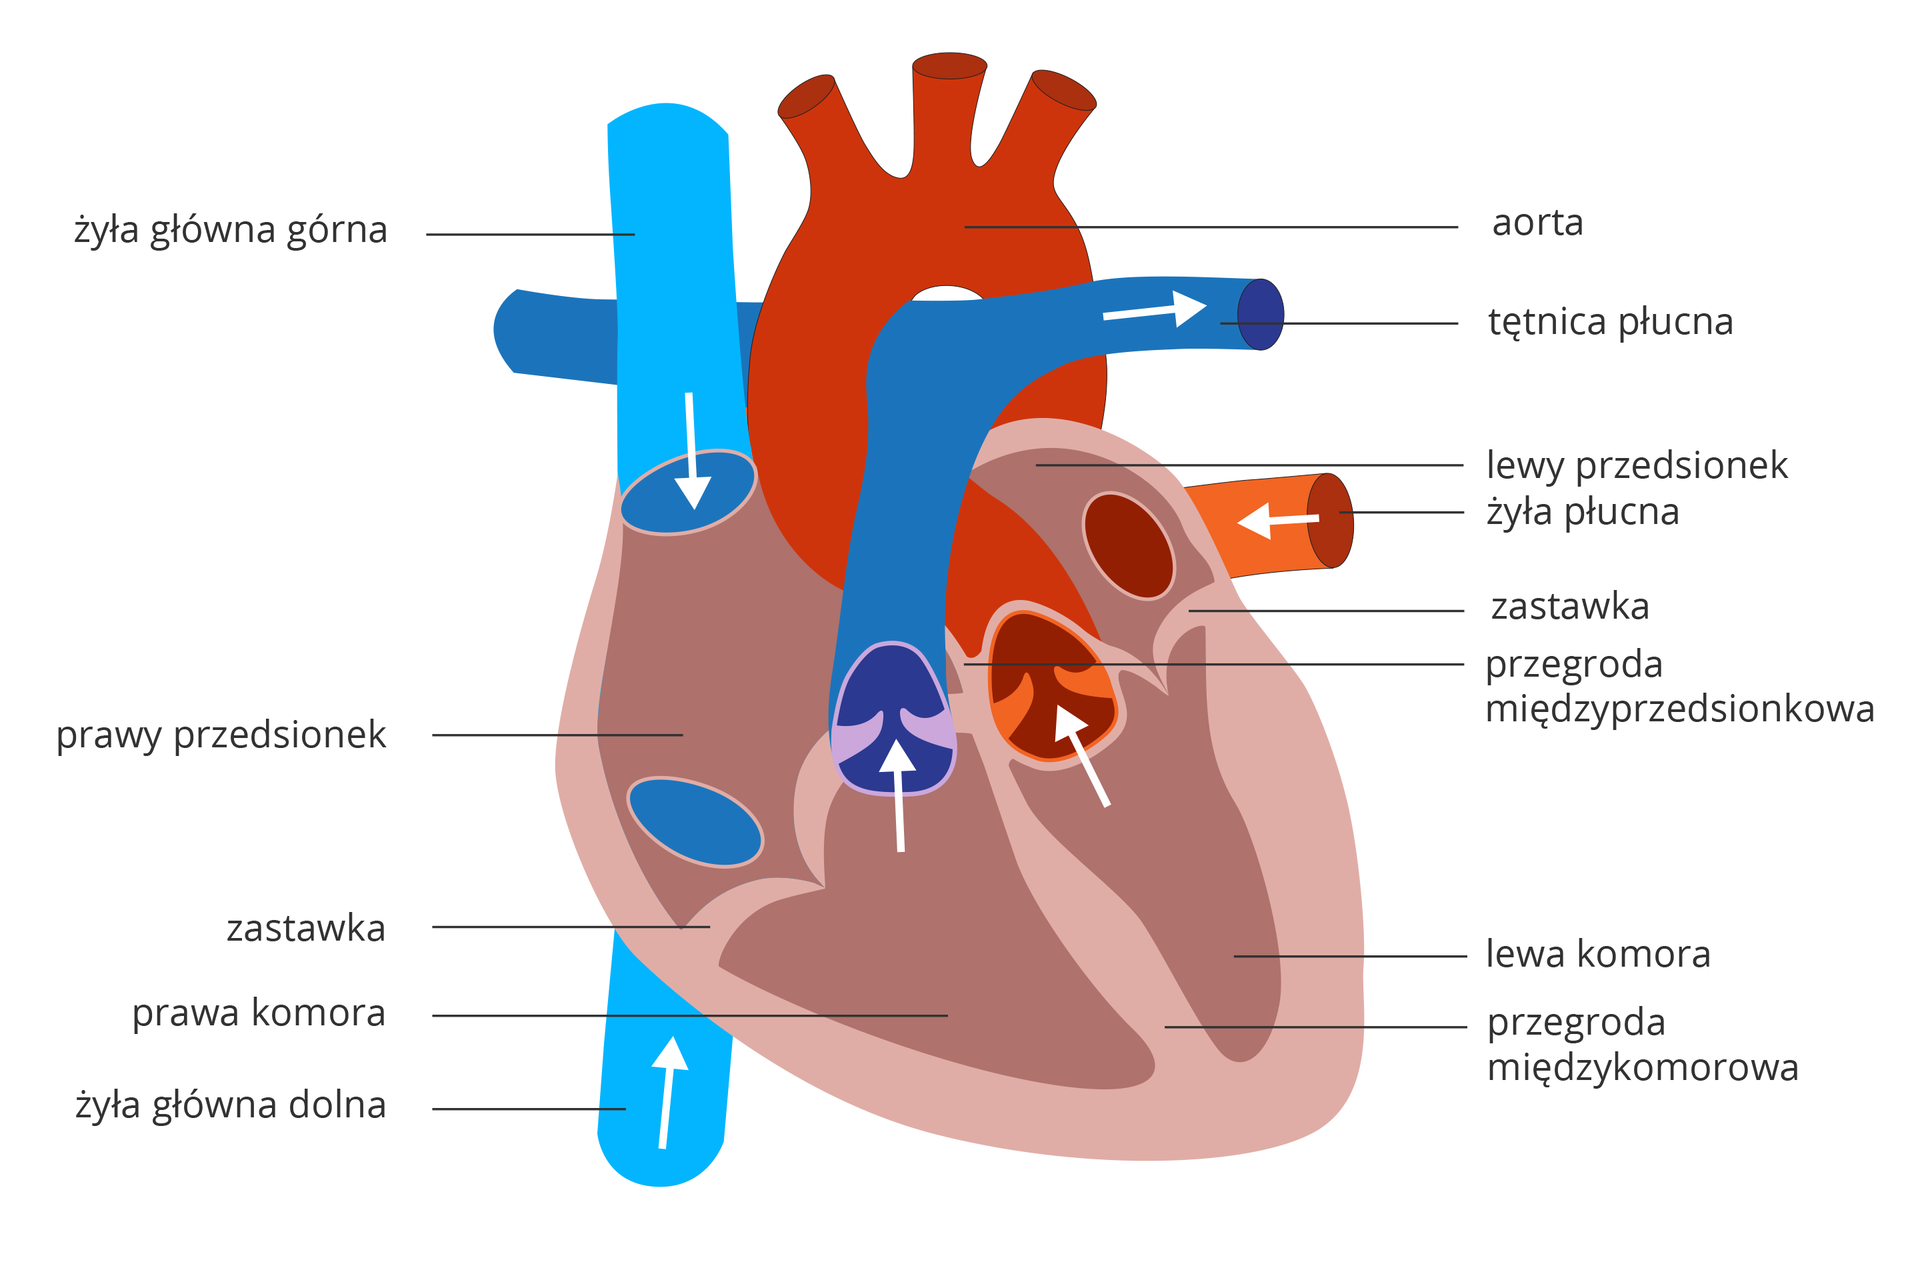 Rysunek przedstawia schemat budowy serca. Mięsień w kolorze kakaowym (jaśniejszym ściany, ciemniejszym wnętrze) leży ukosem. Białe strzałki wskazują kierunek przepływu krwi. Do prawego przedsionka wchodzi z góry błękitna żyła główna górna, z dołu żyła główna dolna. Między przedsionkiem a komorą znajduje się zastawka. Z komory krew wpływa do niebieskiej tętnicy płucnej, rozgałęziającej się w kształcie litery T. Do lewego przedsionka dochodzi pomarańczowa żyła płucna. Z lewej komory krew wpływa do czerwonej aorty.